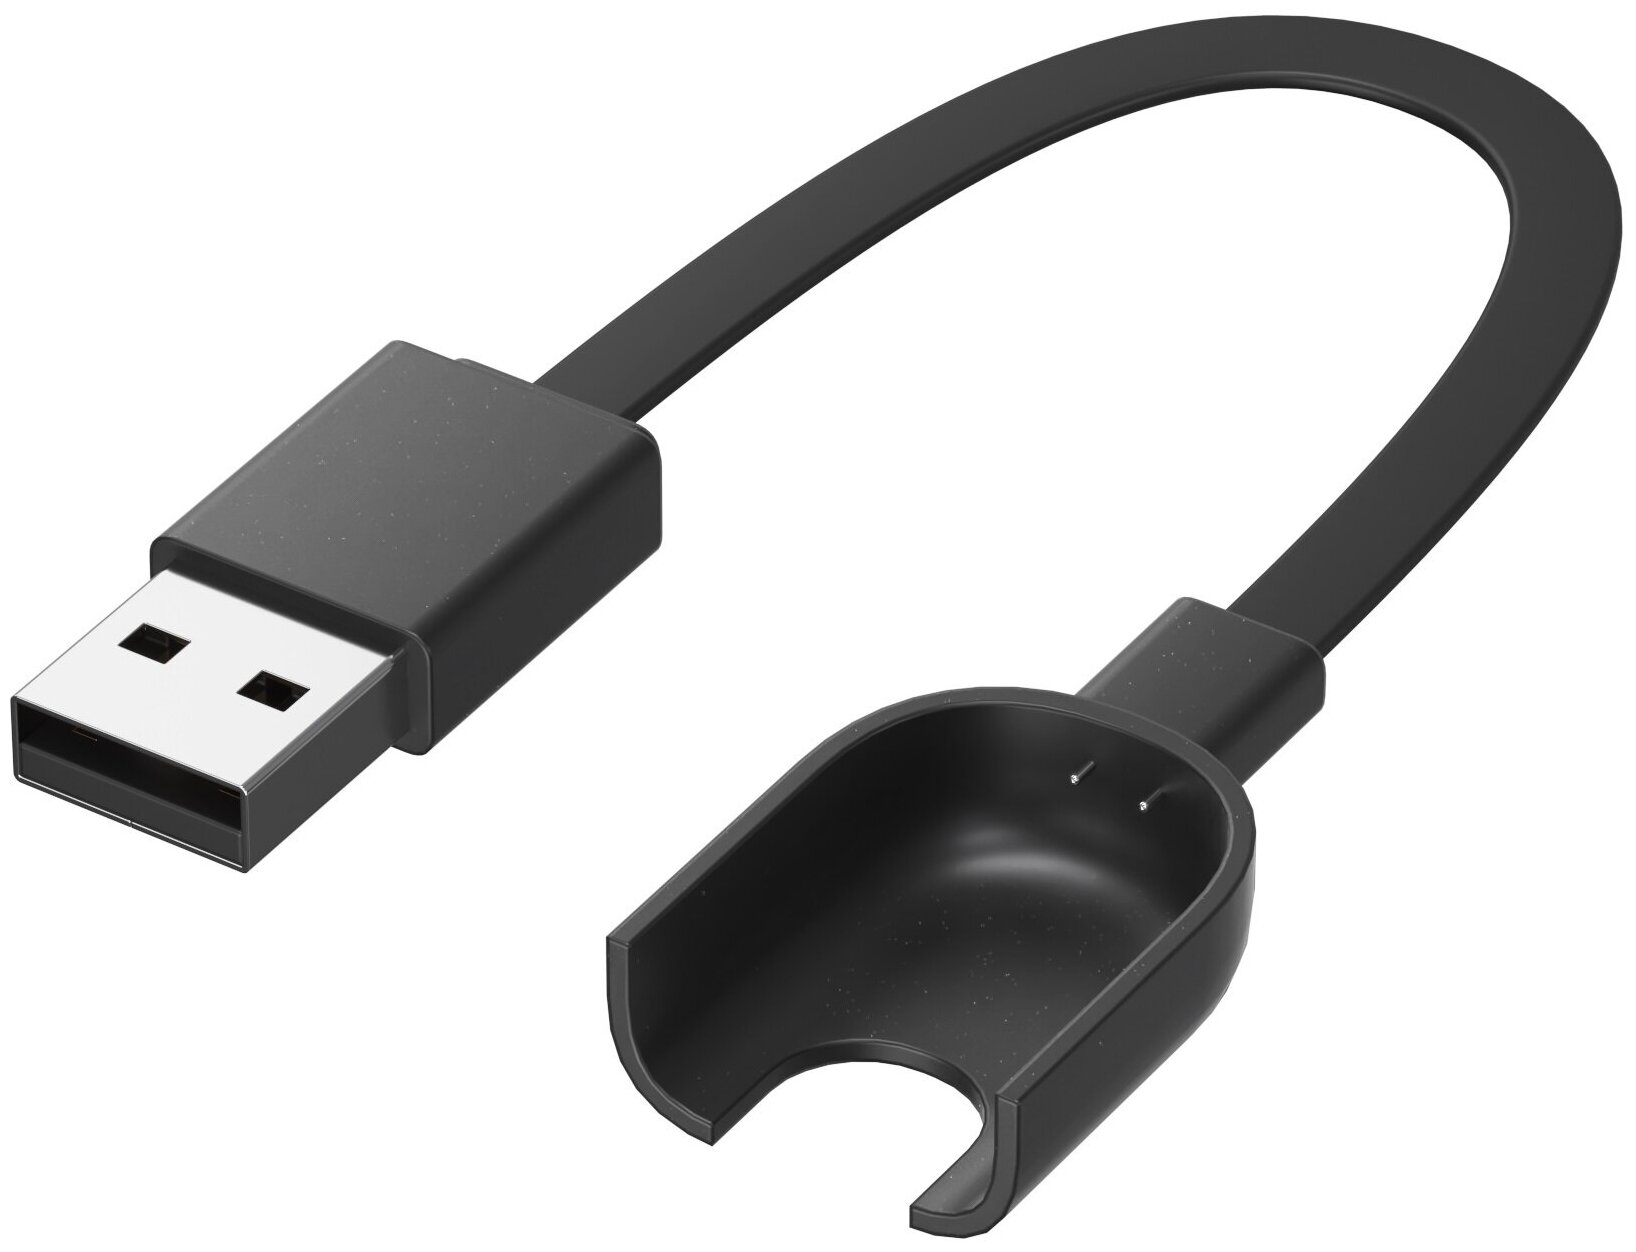 USB кабель GSMIN для зарядки Xiaomi Mi Band 2 Сяоми / Ксяоми Ми Бэнд зарядное устройство (Черный)